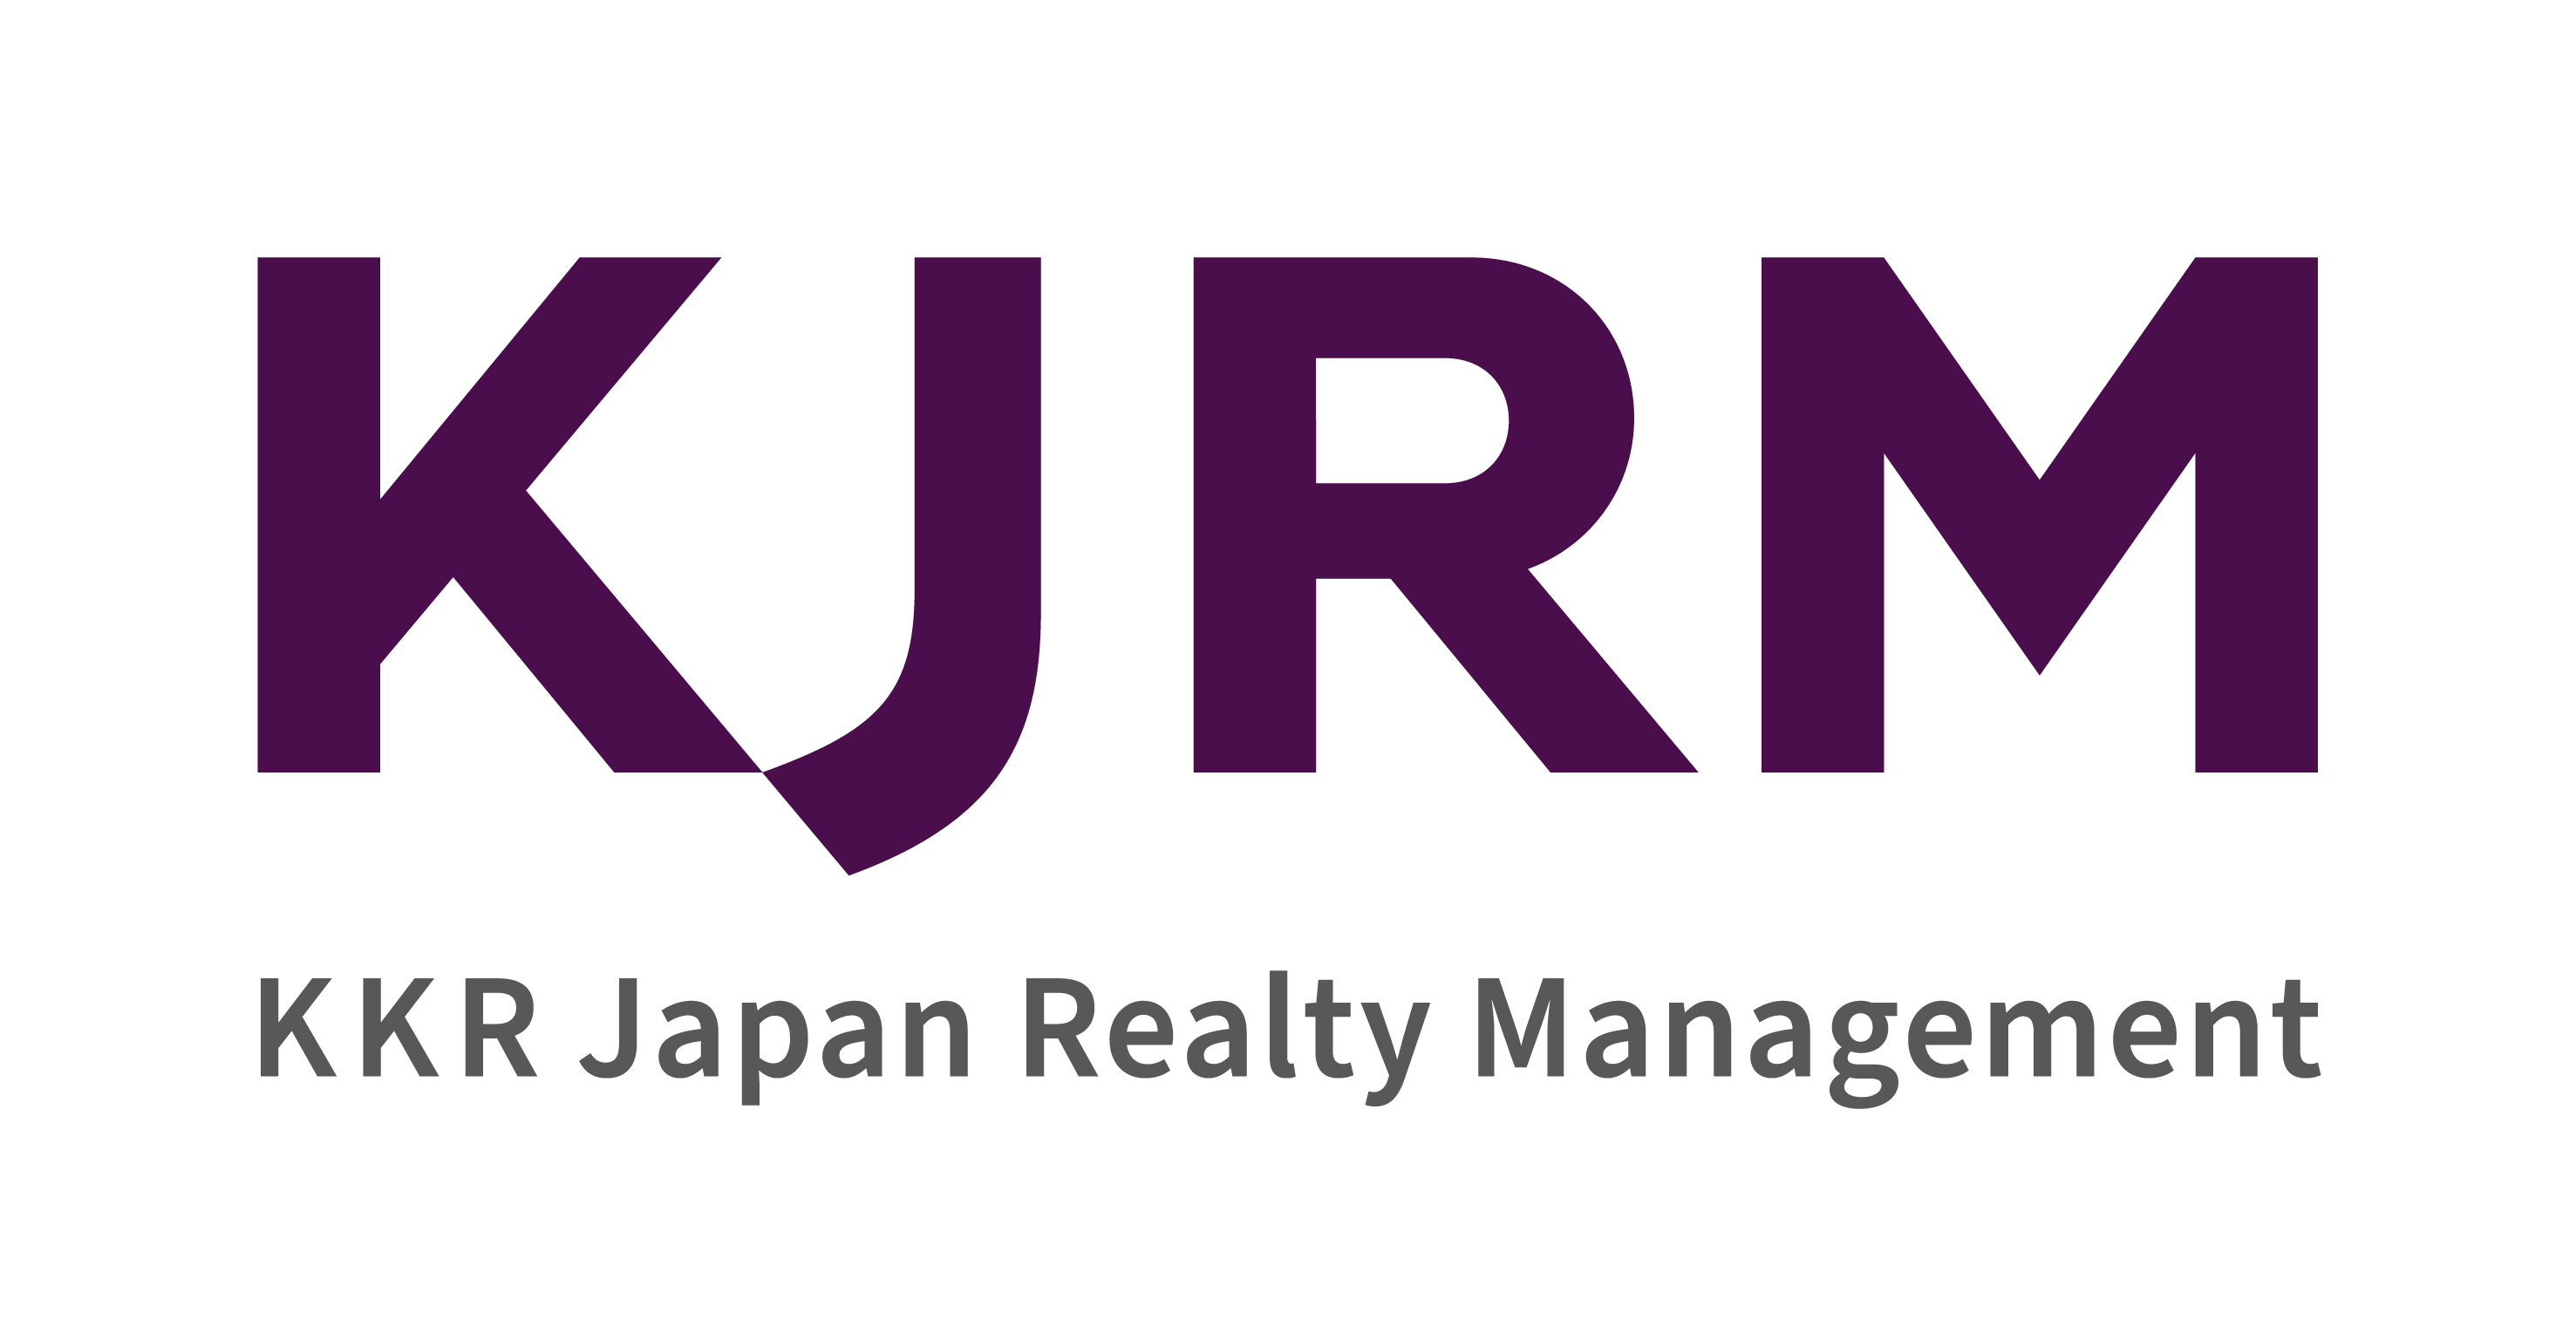 KKR Japan Realty Management